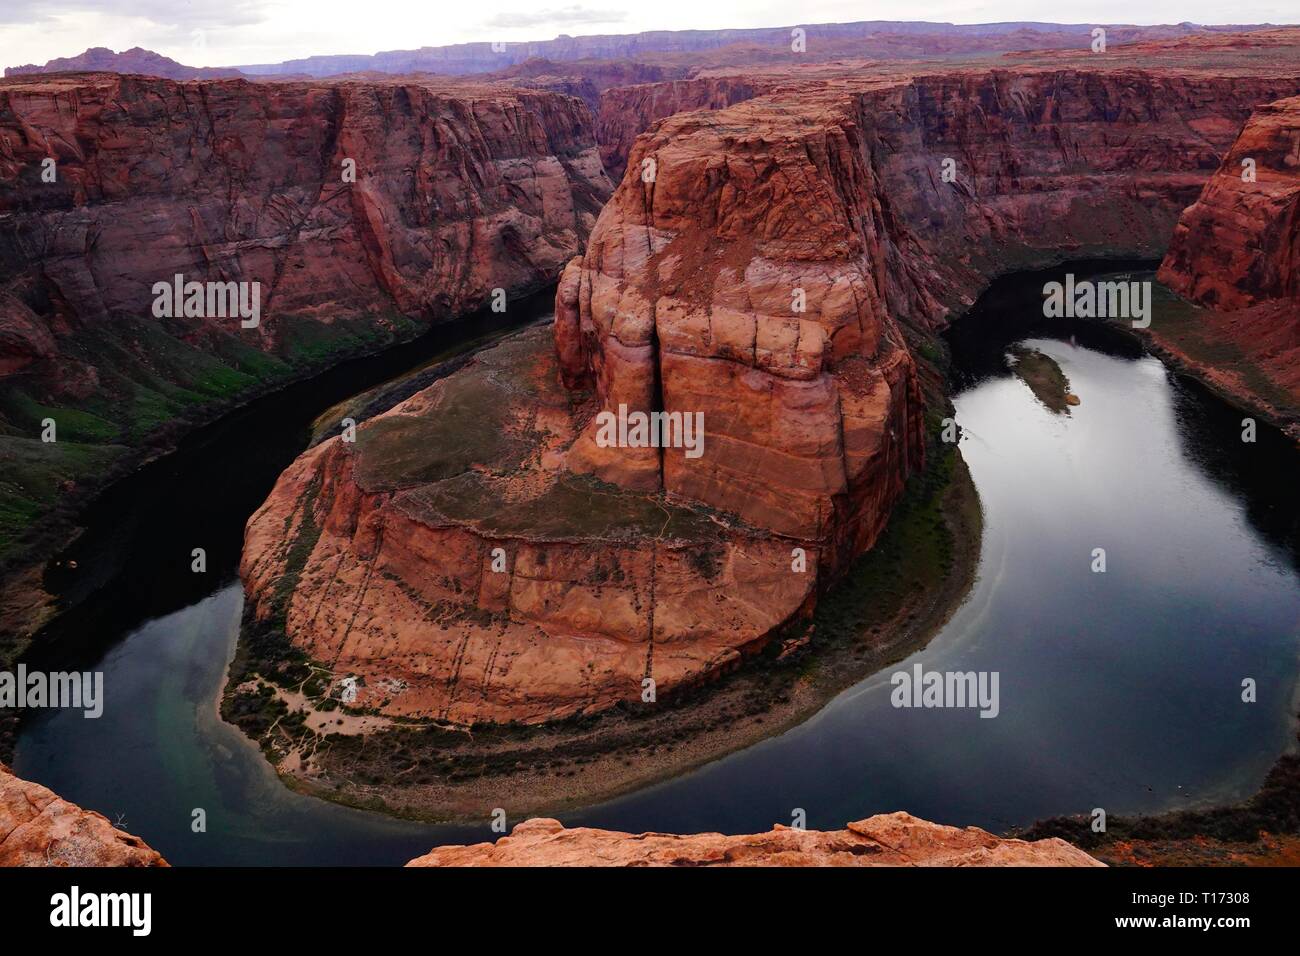 Horseshoe Bend es una forma de herradura incididos meandro del Río Colorado, situado cerca de la ciudad de Page, Arizona, en los Estados Unidos. Foto de stock